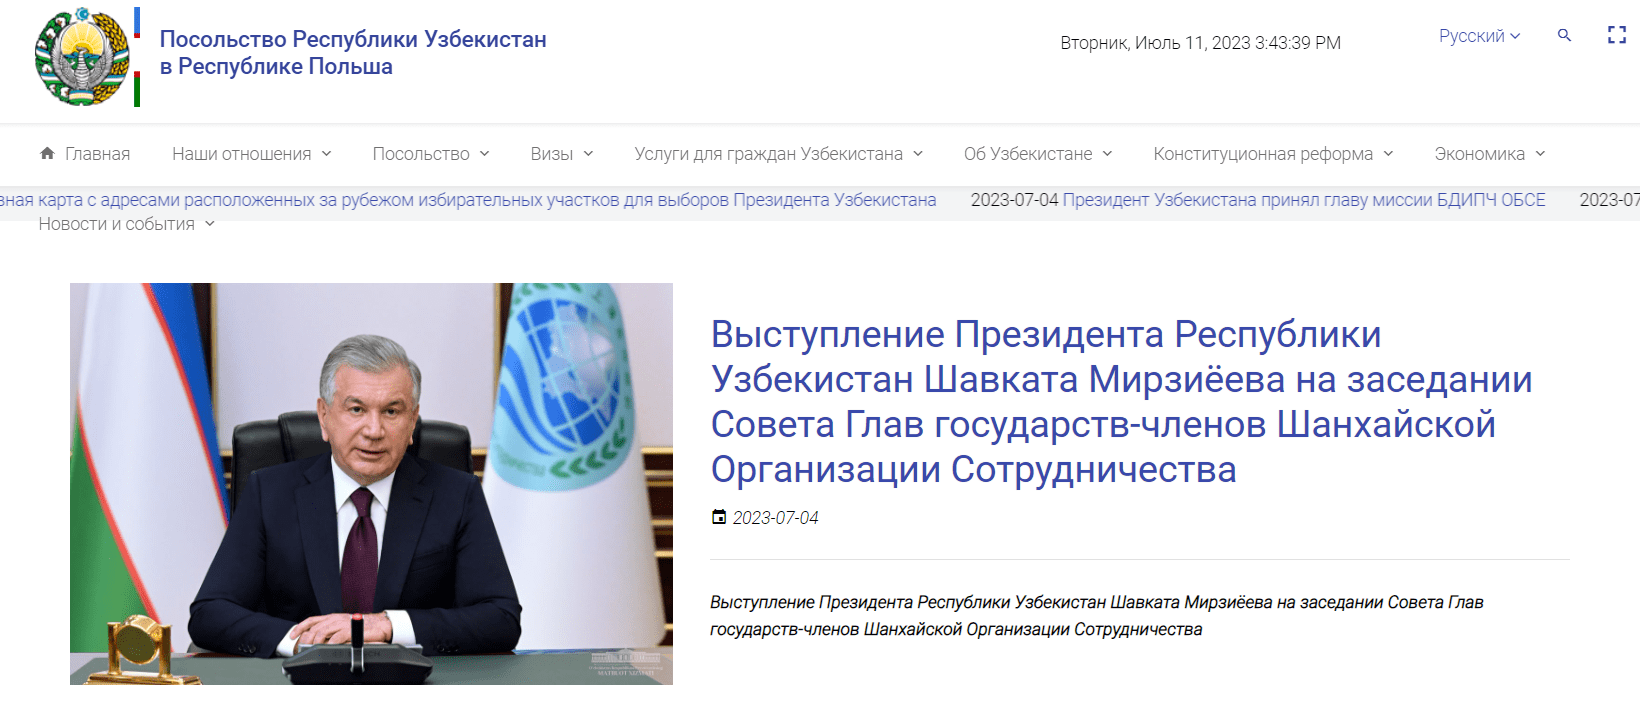 Посольство Республики Узбекистан в Польше (uzbekistan.pl) - официальный сайт